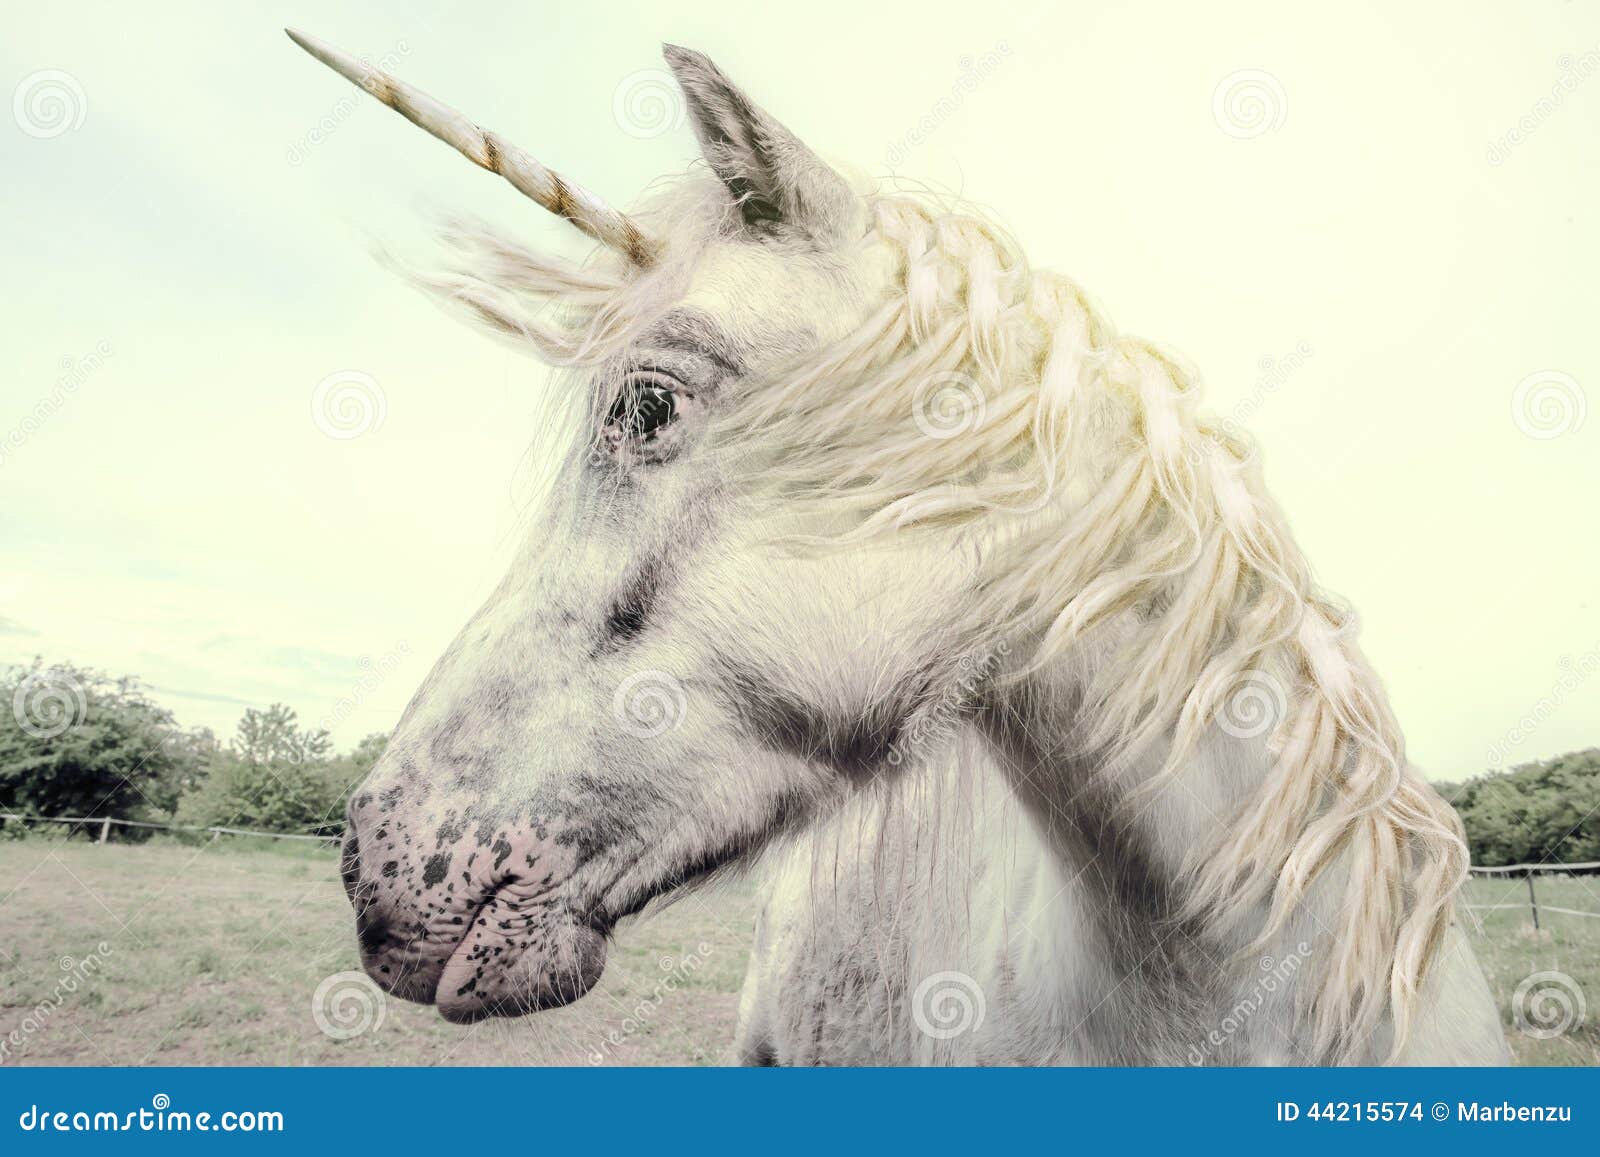 Unicorn Stock Photo - Image: 44215574